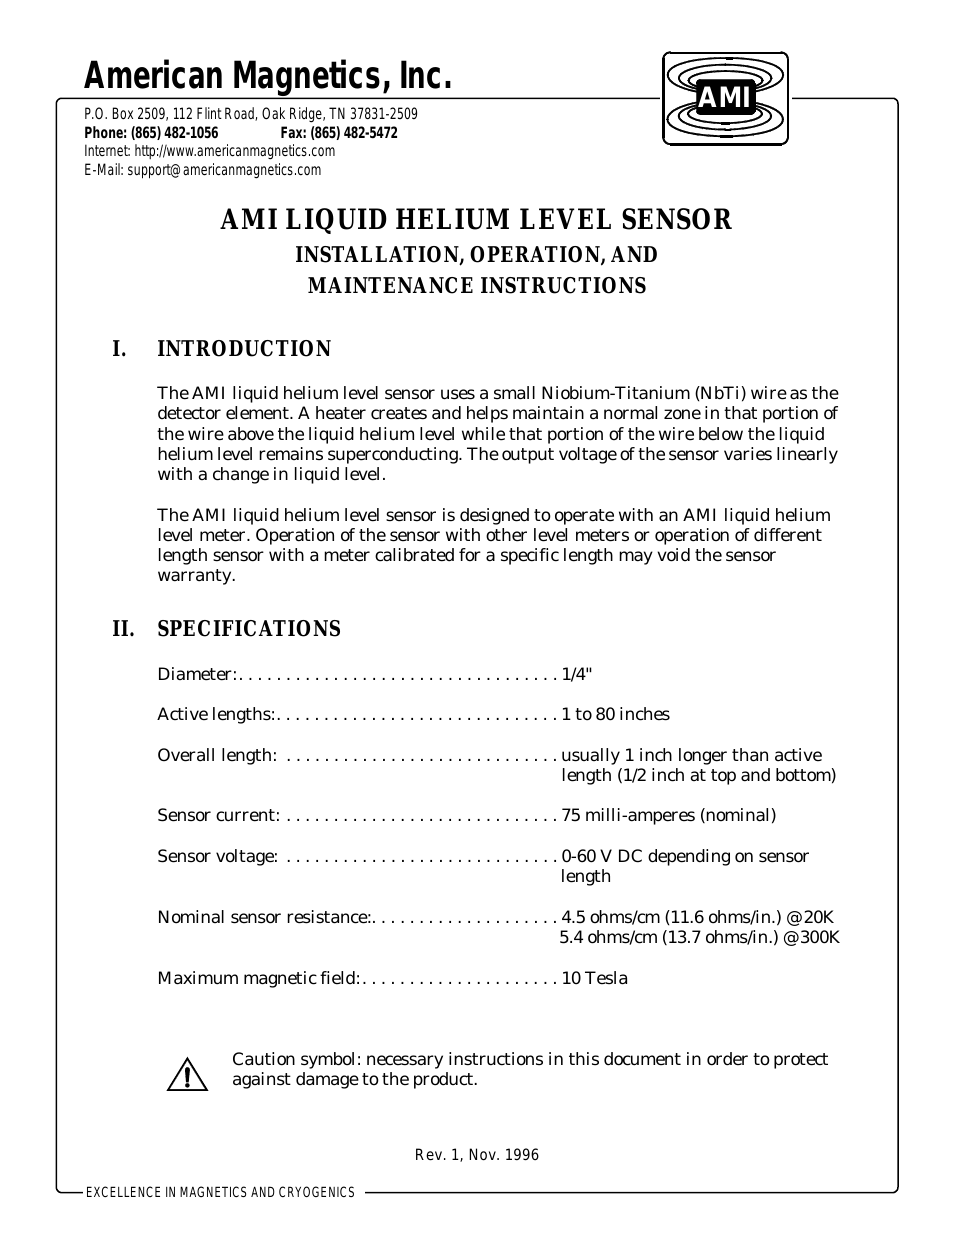 AMI Liquid Helium Level Sensors